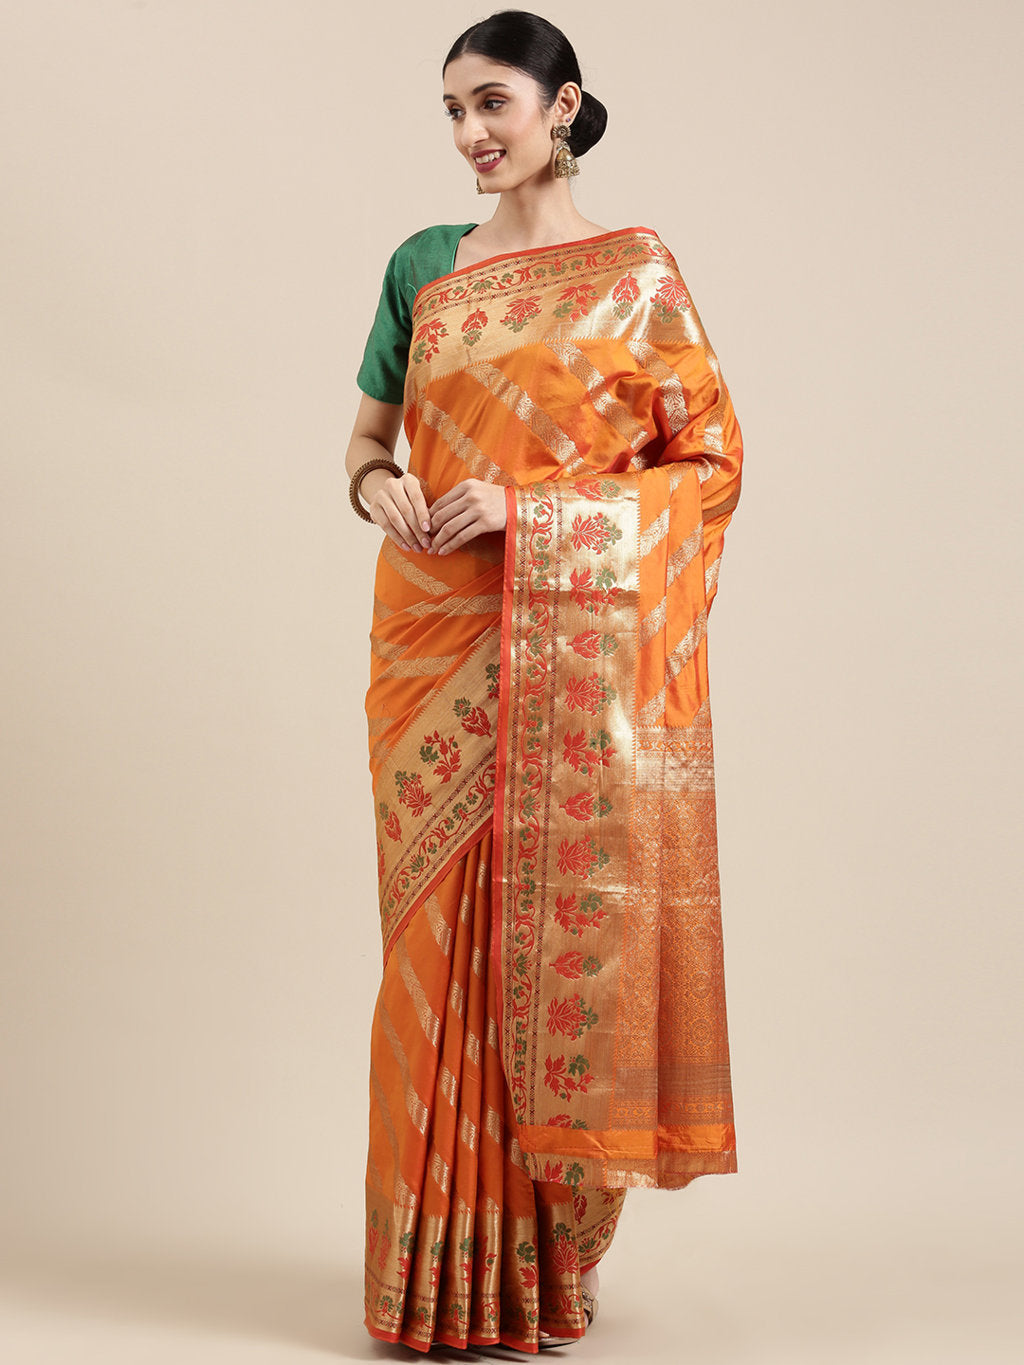 Women's Turmeric Yellow Pure Chanderi Cotton Meenakari Traditional Saree - Sangam Prints